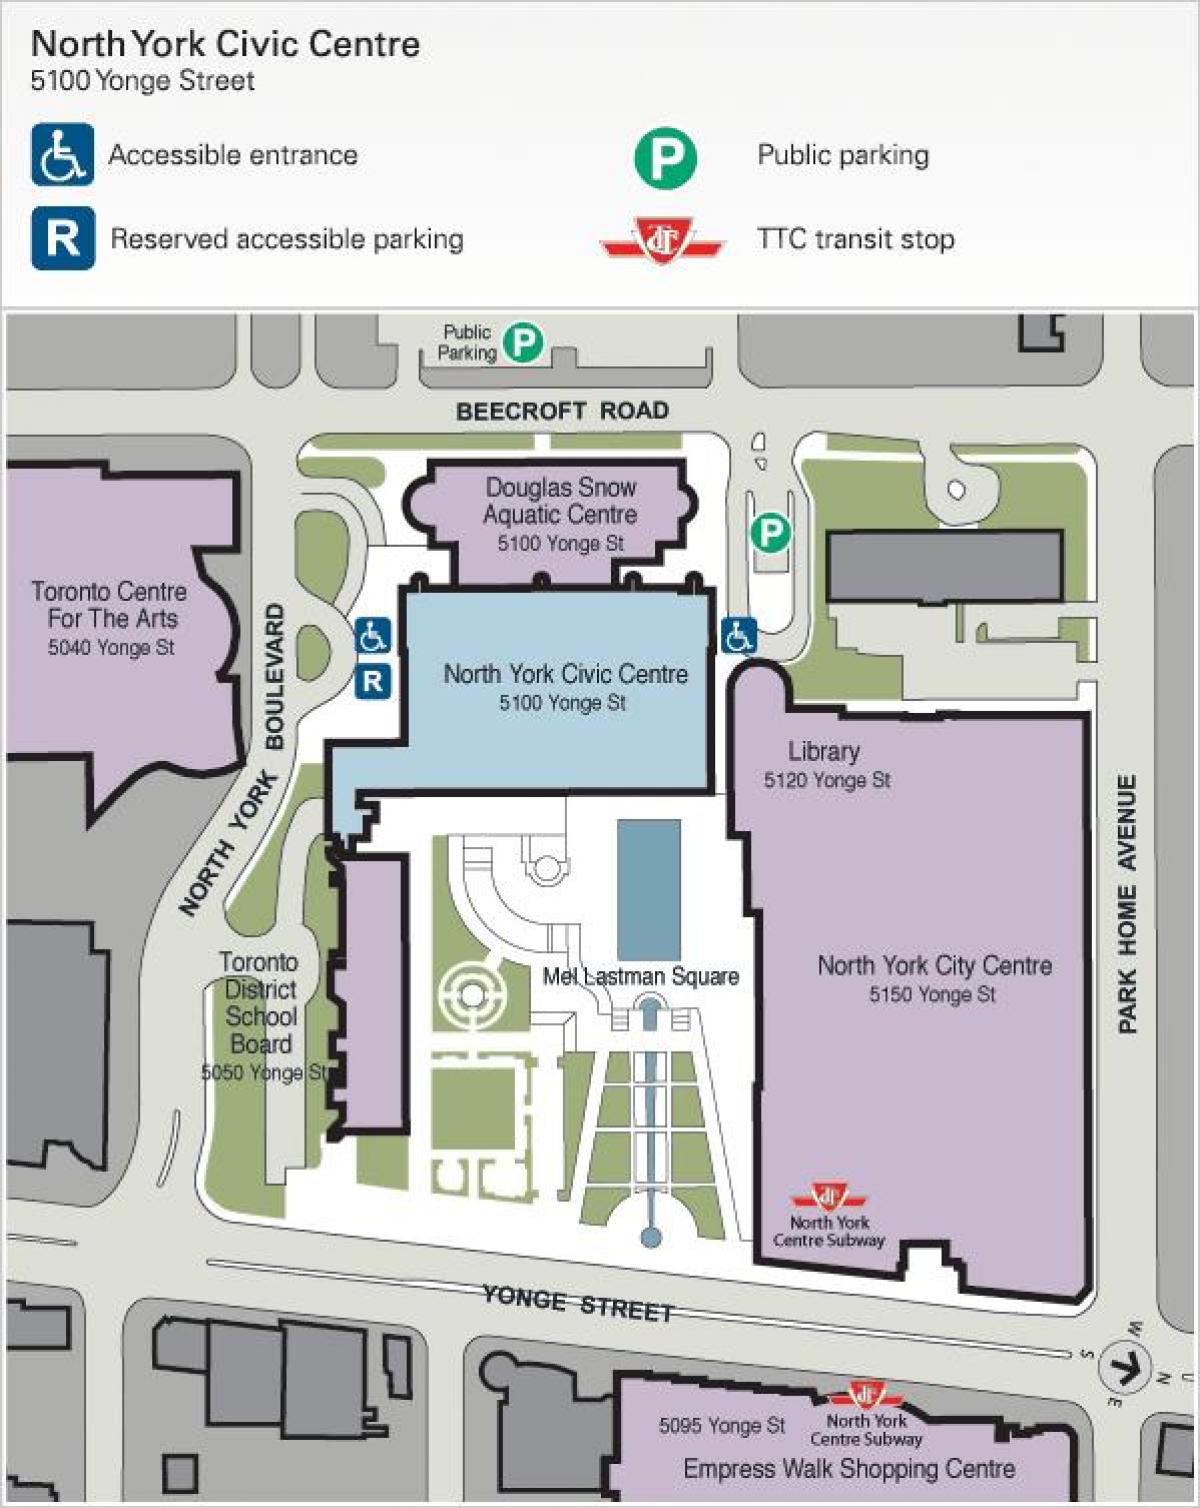 Χάρτης του Τορόντο Κέντρο για τις Τέχνες χώρο στάθμευσης